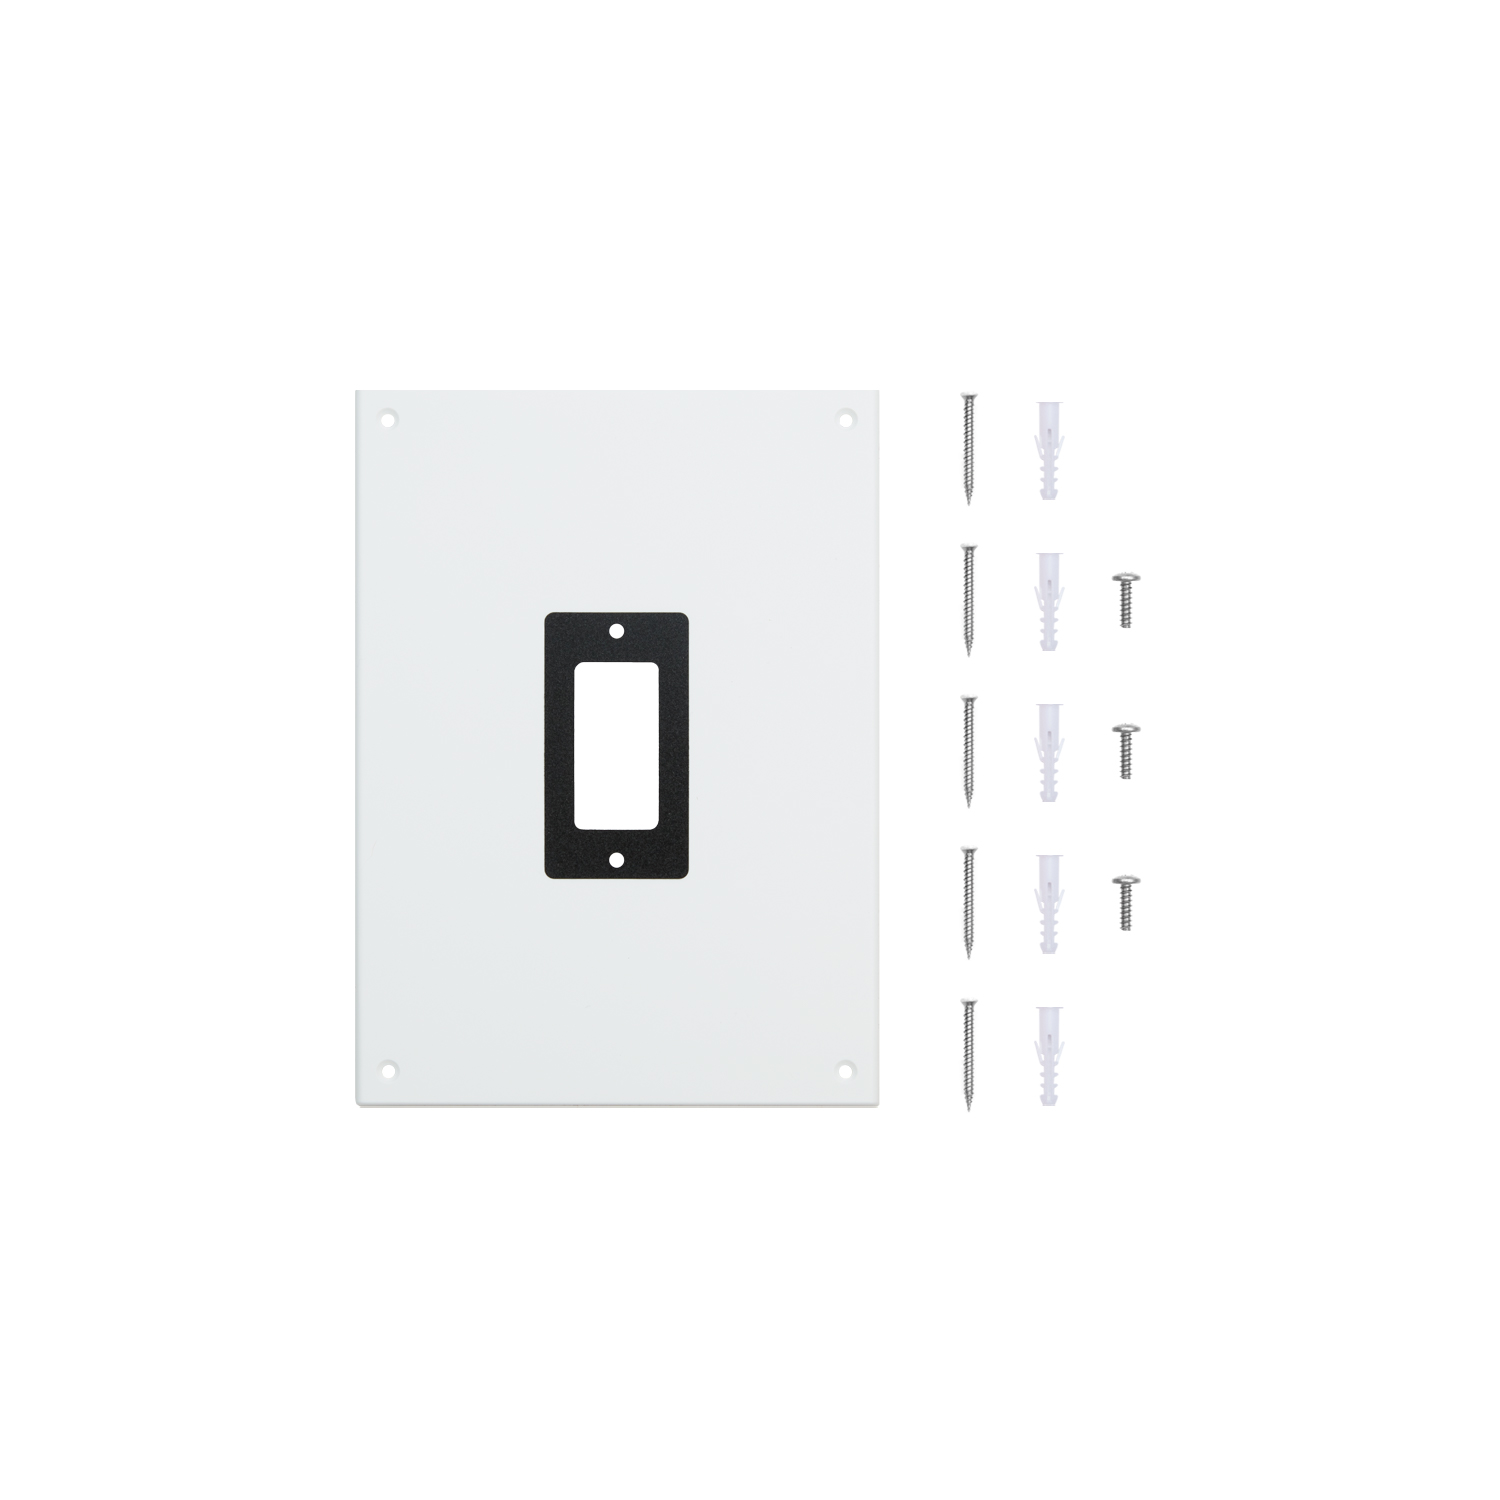 Intercom Kit (for Video Doorbells) - White